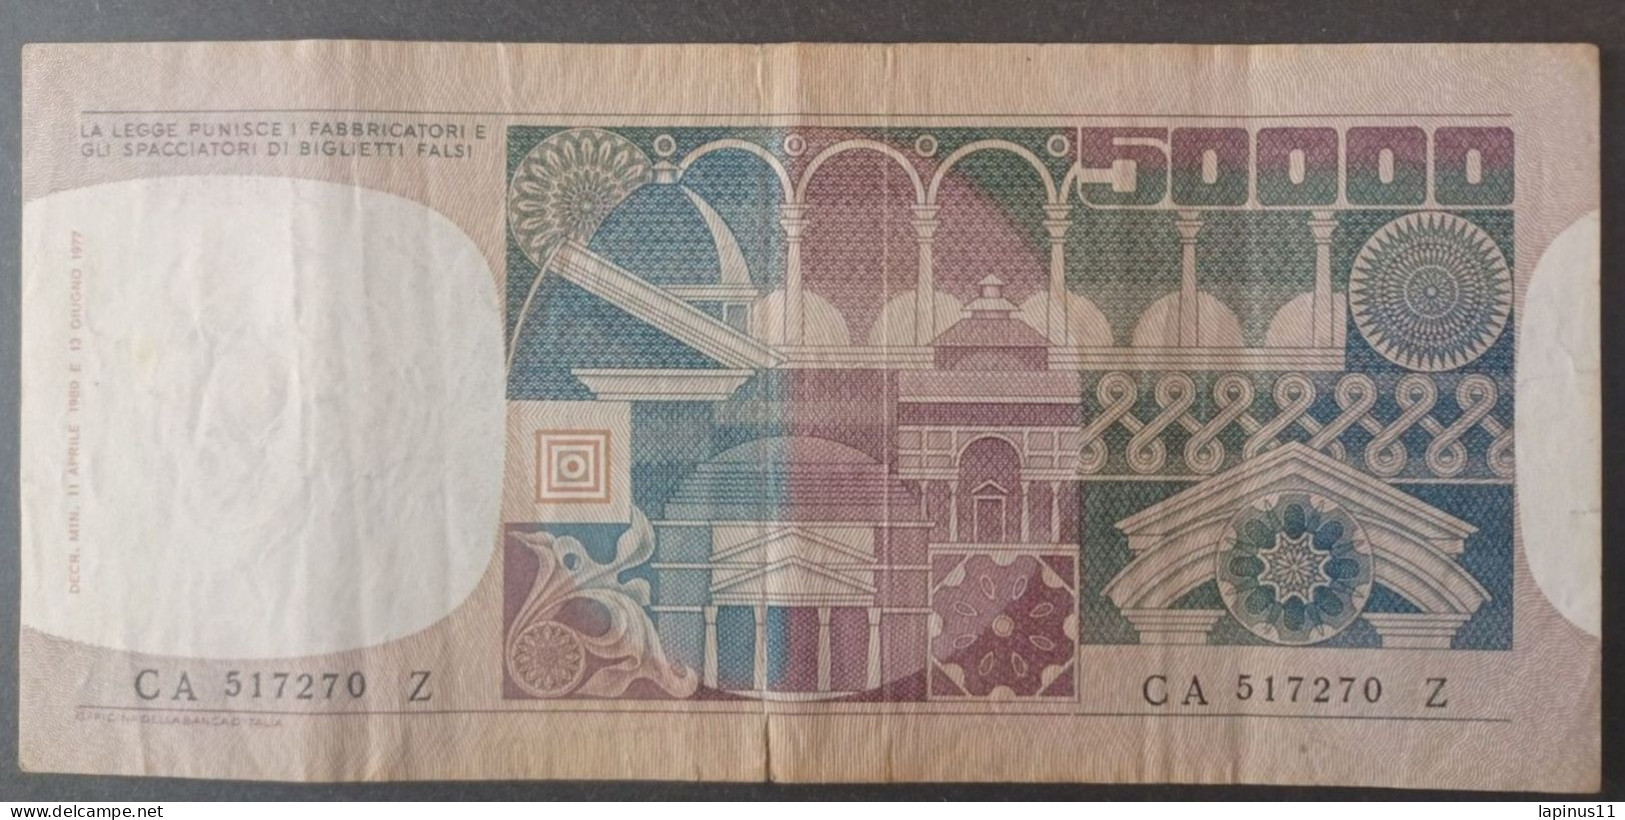 BANKNOTE ITALY 50000 LIRE 1980 CIAMPI STEVANI CIRCULATED - 50000 Lire